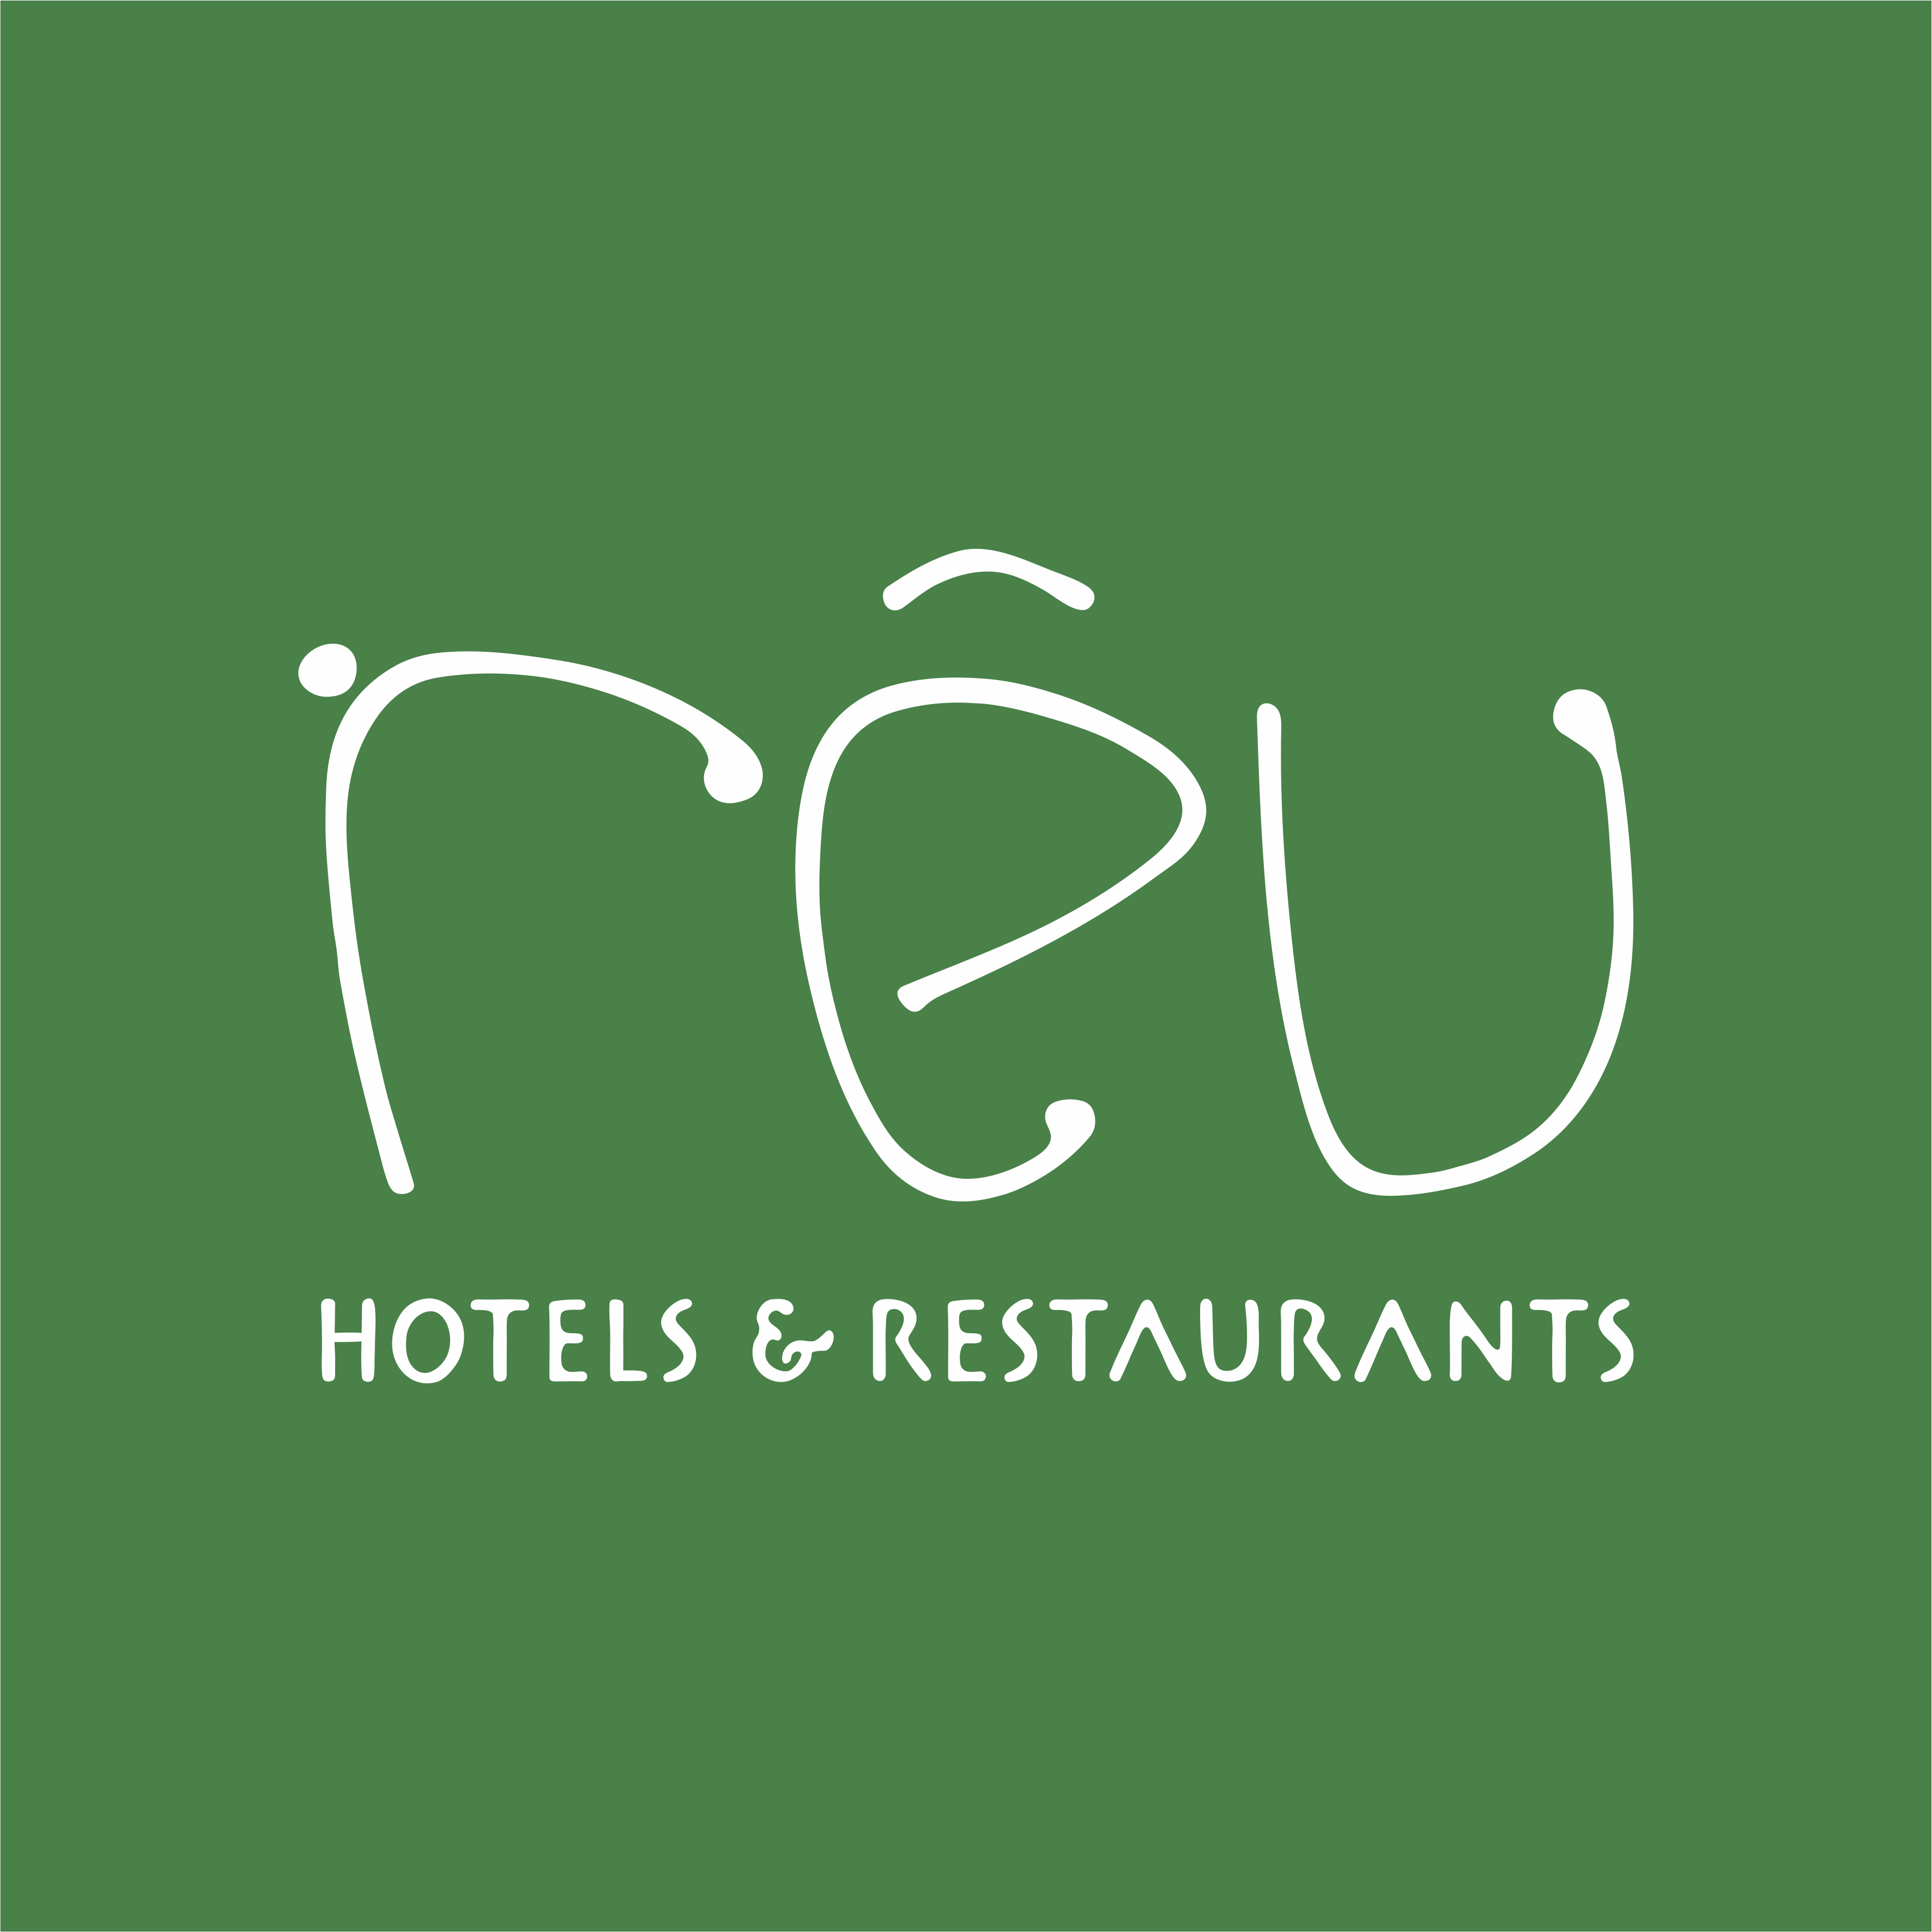 Reu Hotels & Restaurants